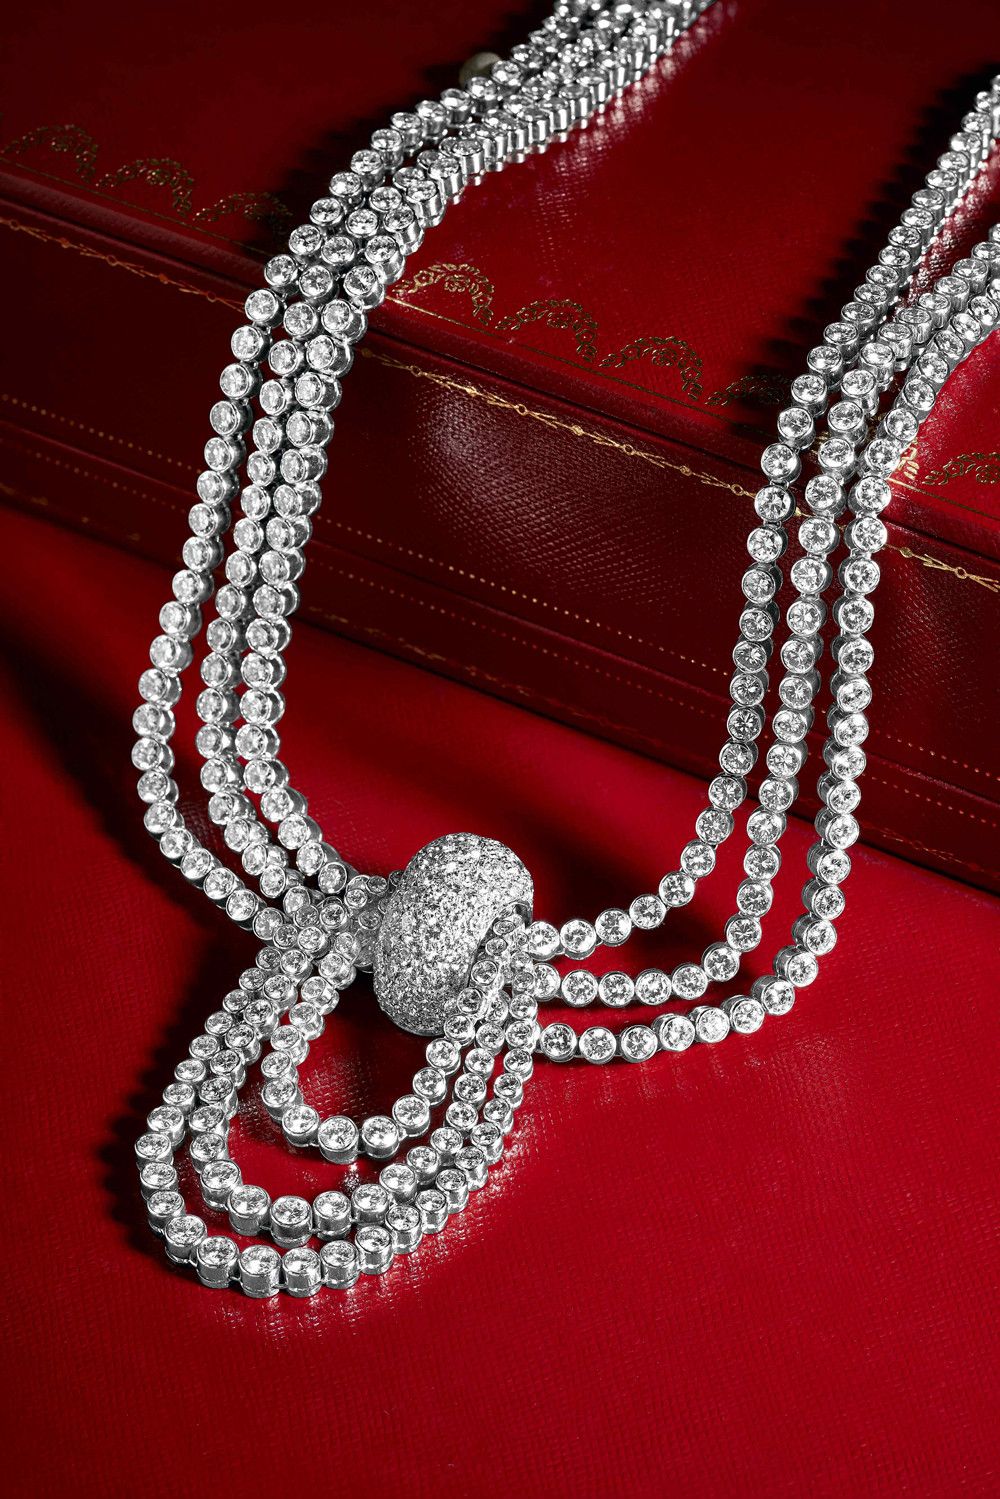 Колье Cartier из белого золота с бриллиантами. Фото: AstaGuru